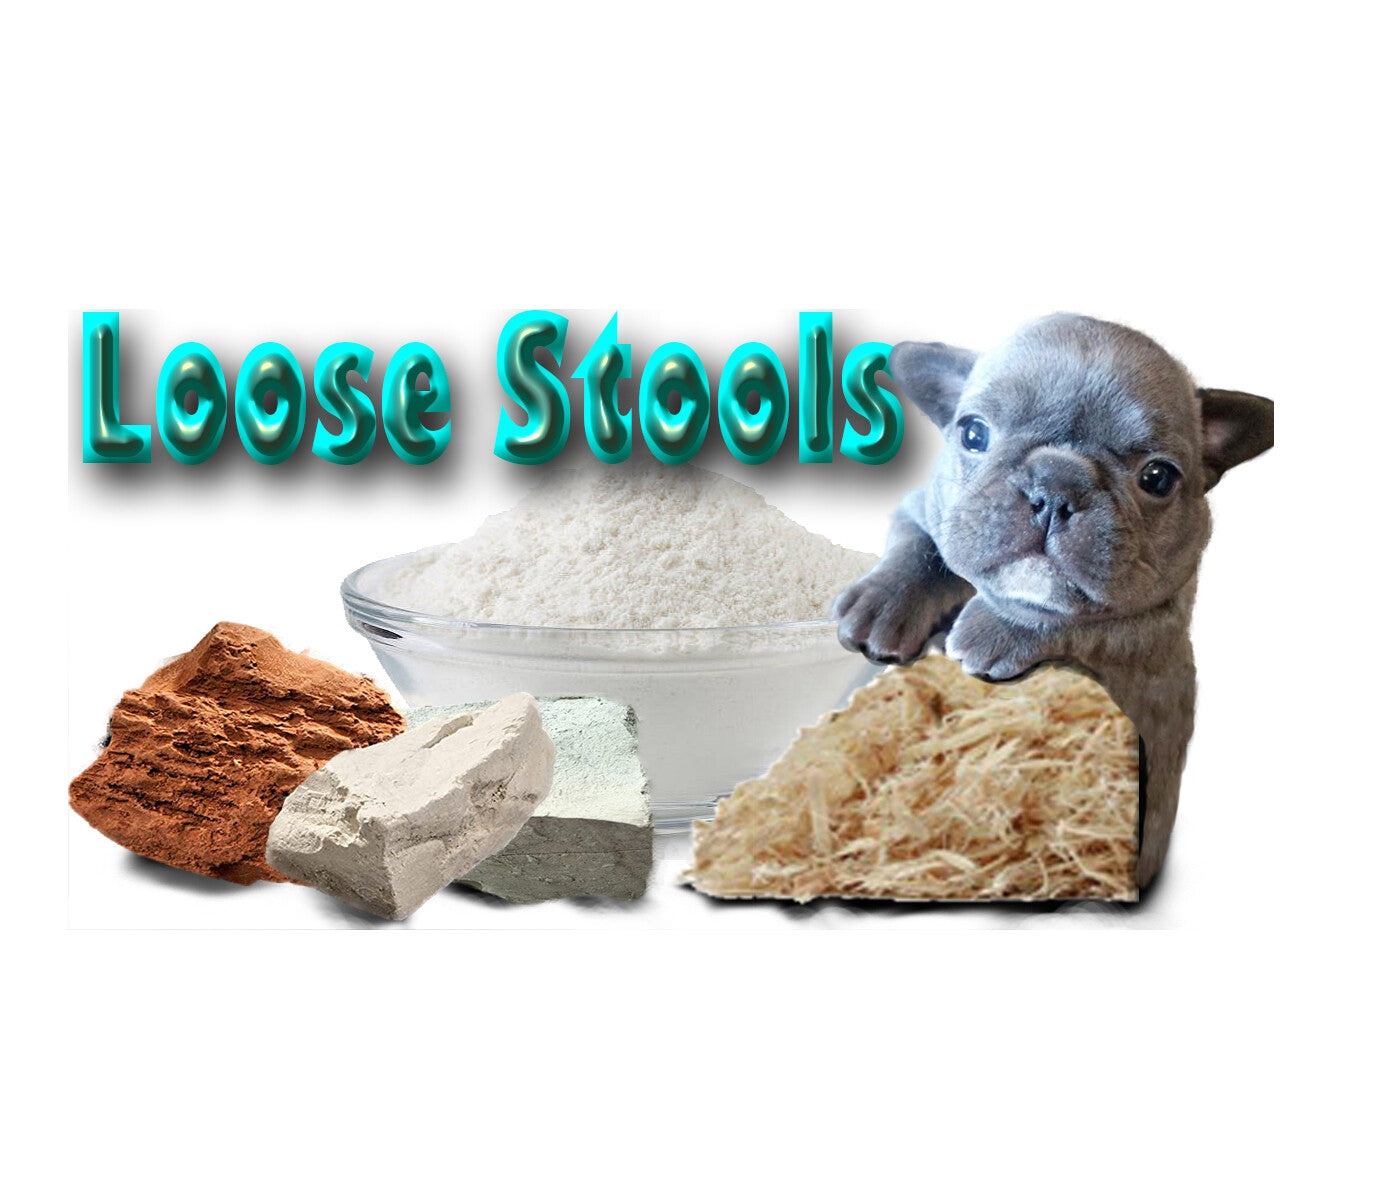 Loose Stool Mix